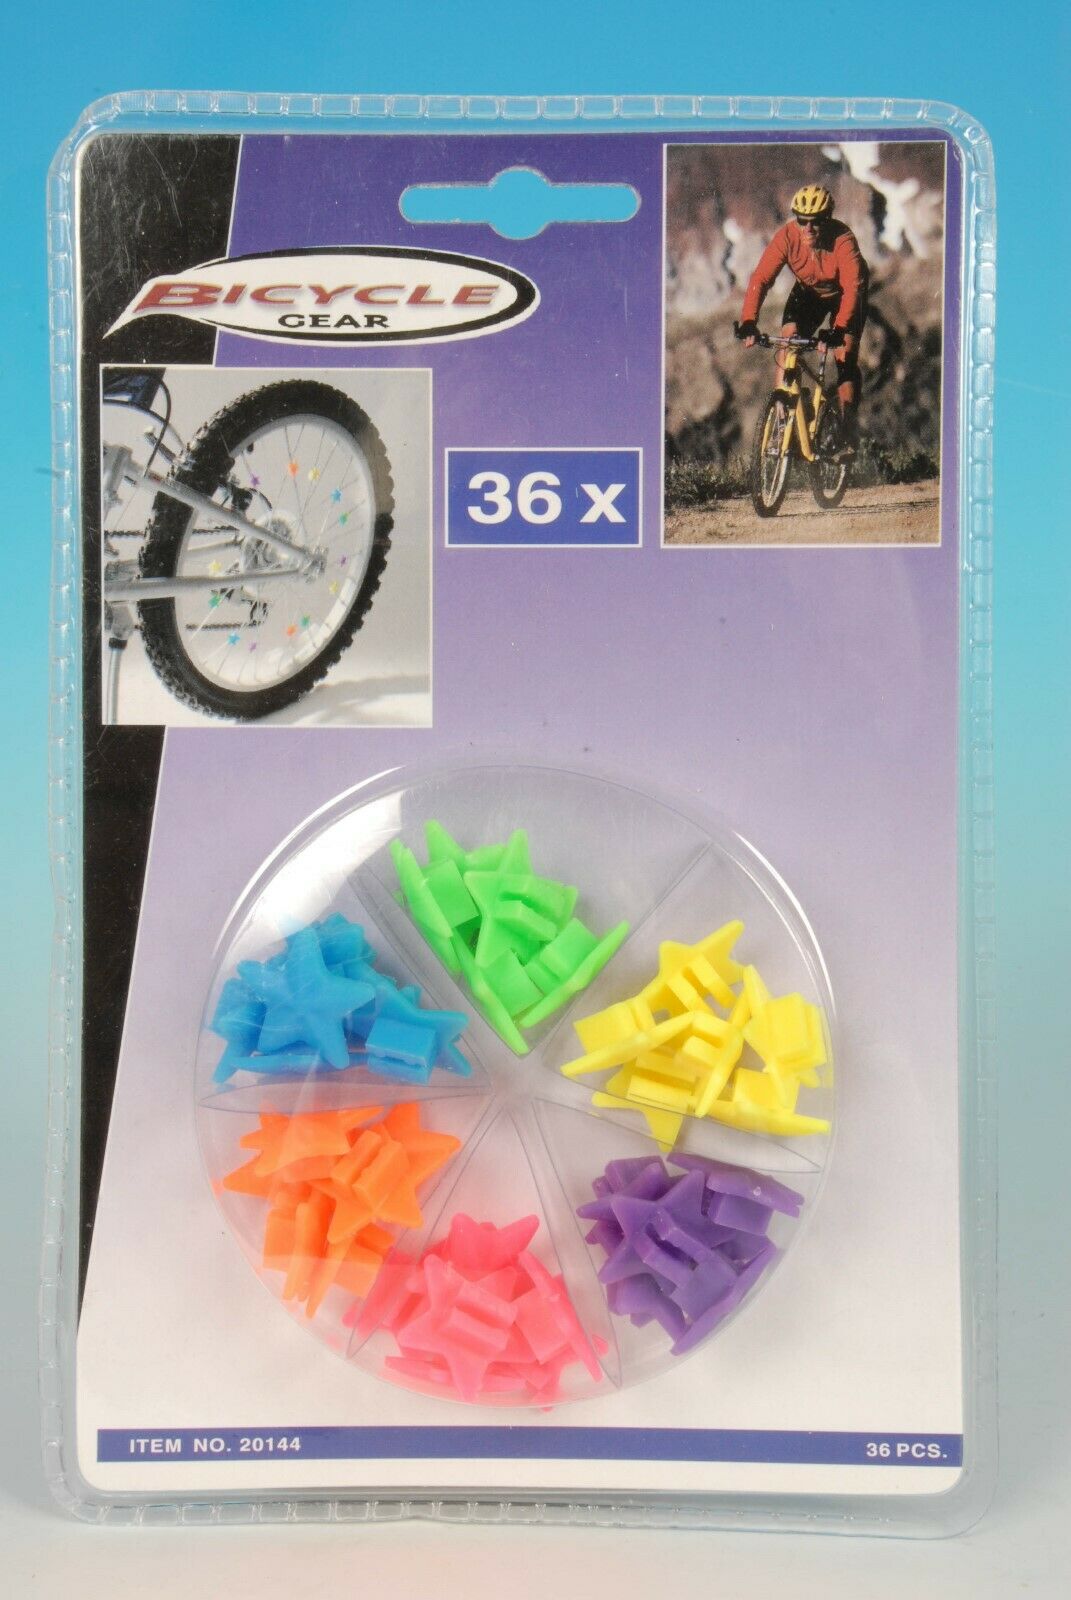 26/36 Stk.Bunte Fahrrad Speichenperlen Speichenclips für Kinder Citybike Deko 